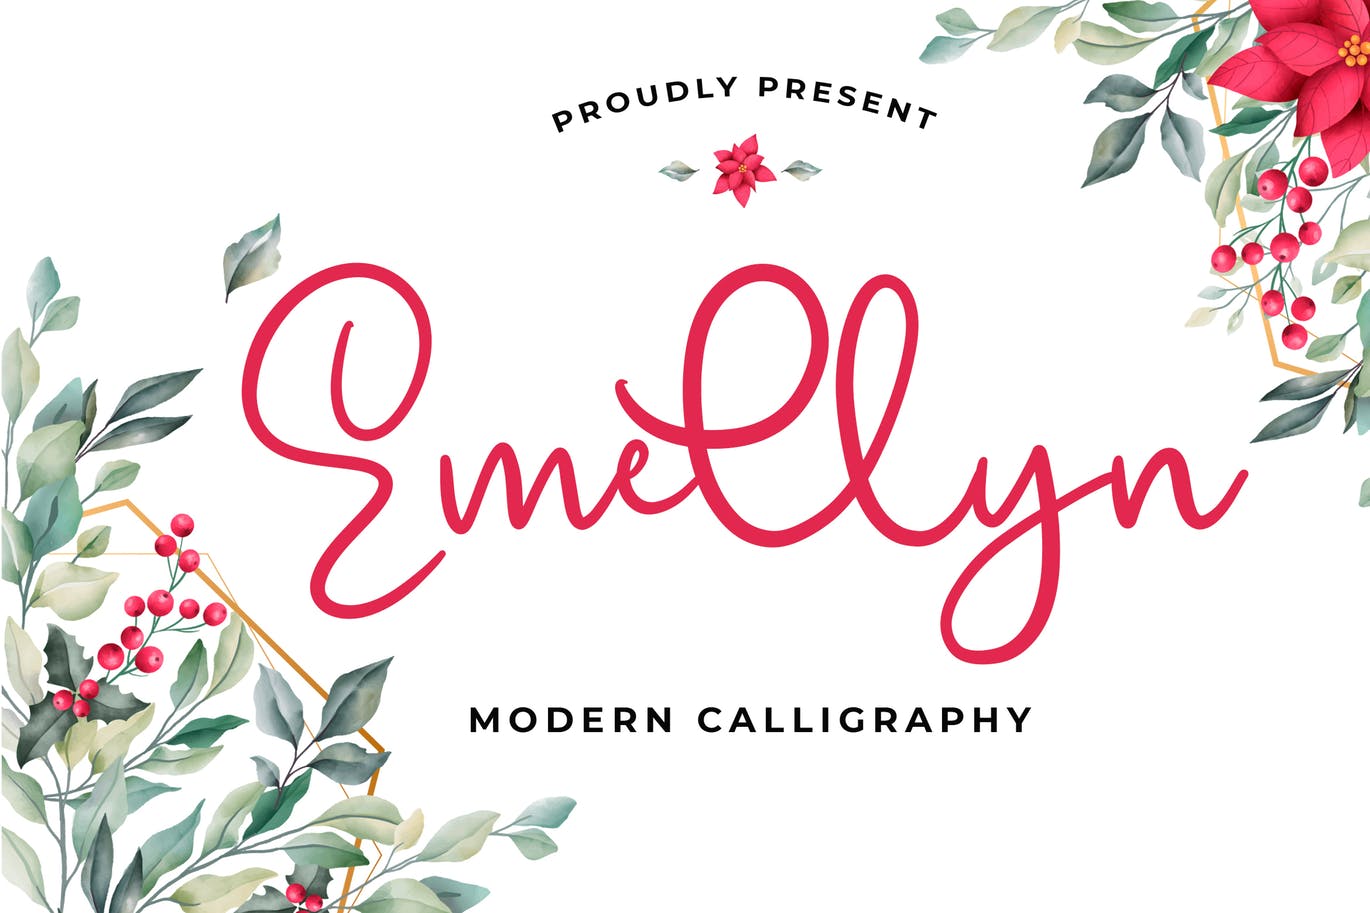 可爱风格英文现代书法字体第一素材精选 Emellyn Lovely Modern Calligraphy Font插图